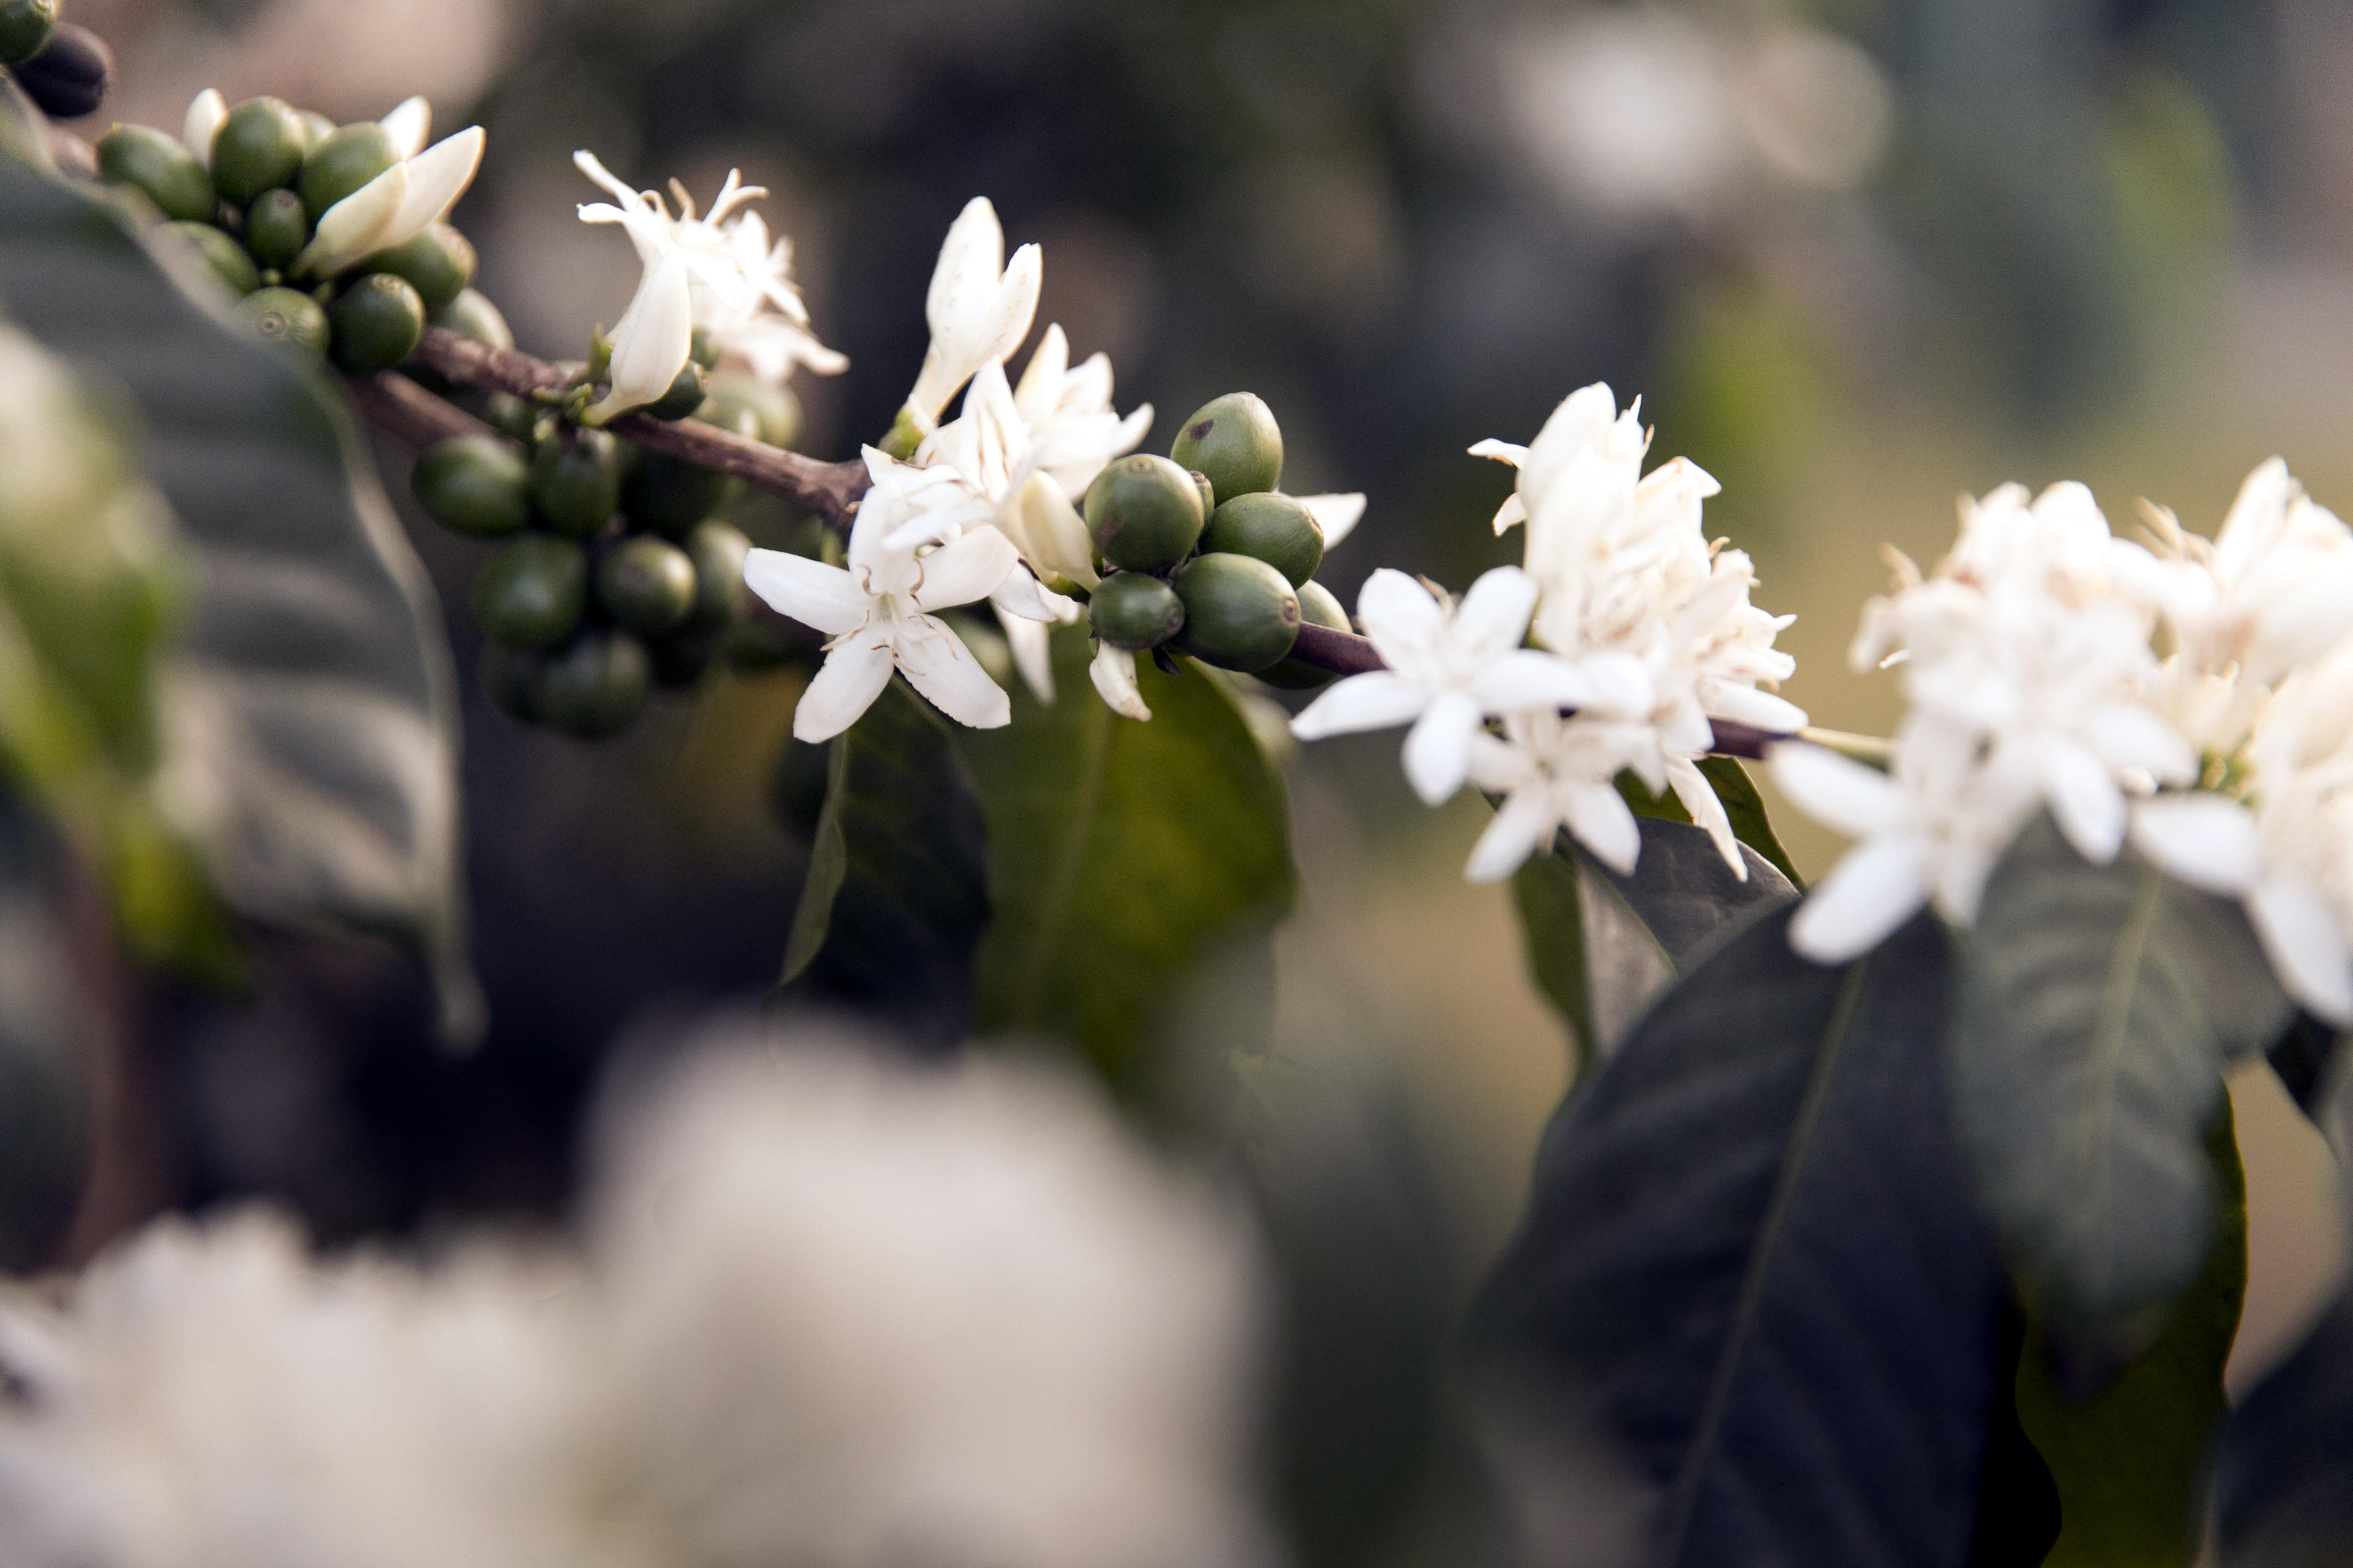 Zweig eines Kaffeestrauchs in Kenia mit Blüten und unreifen Früchten. Kaffee gehört zu den Hauptexportgütern des Landes.